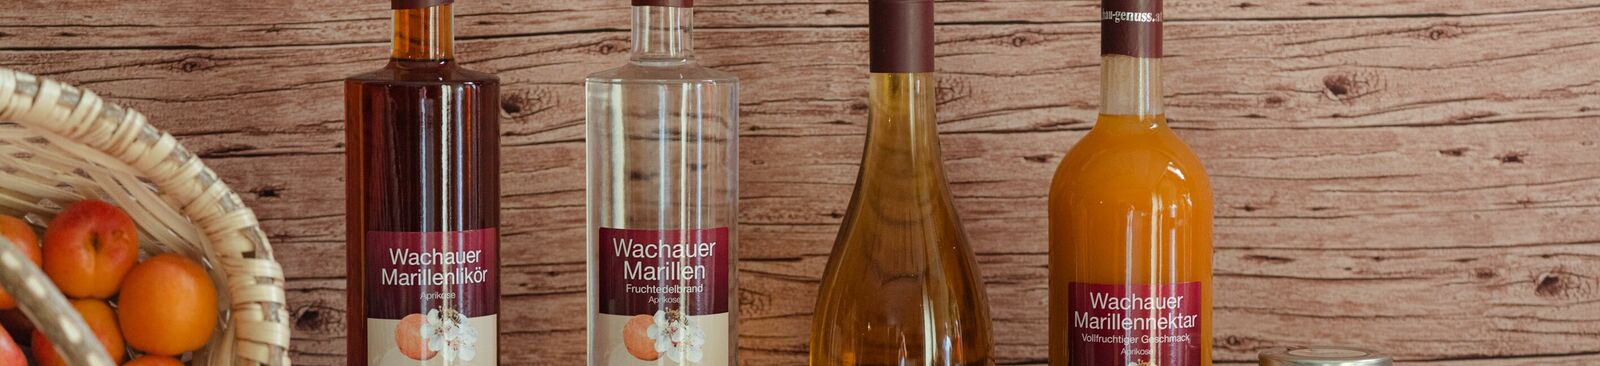 Marillenhof – Destillerie Kausl